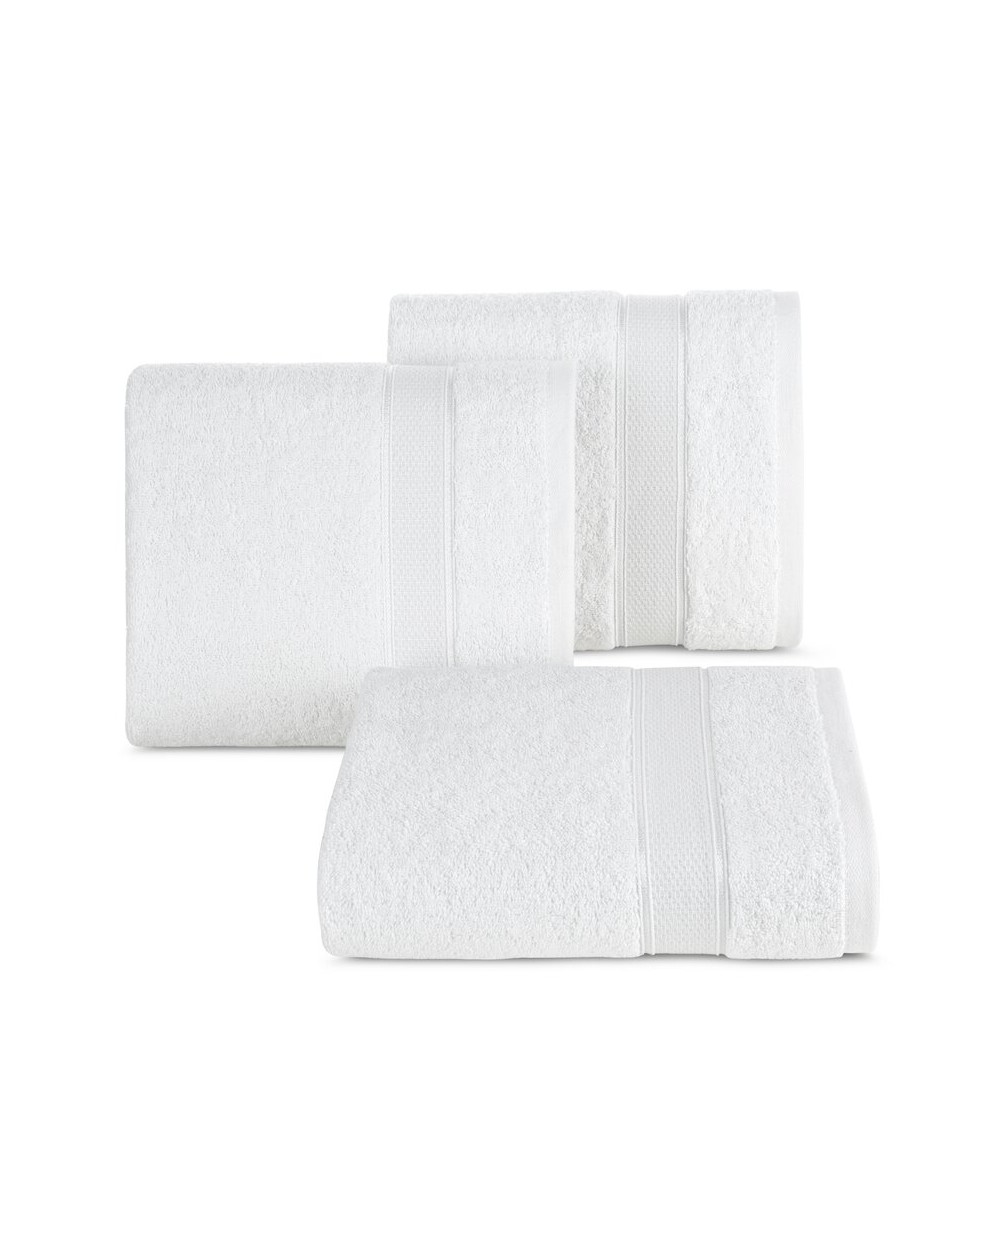 Ręcznik bawełna 70x140 Liana biały Eurofirany 